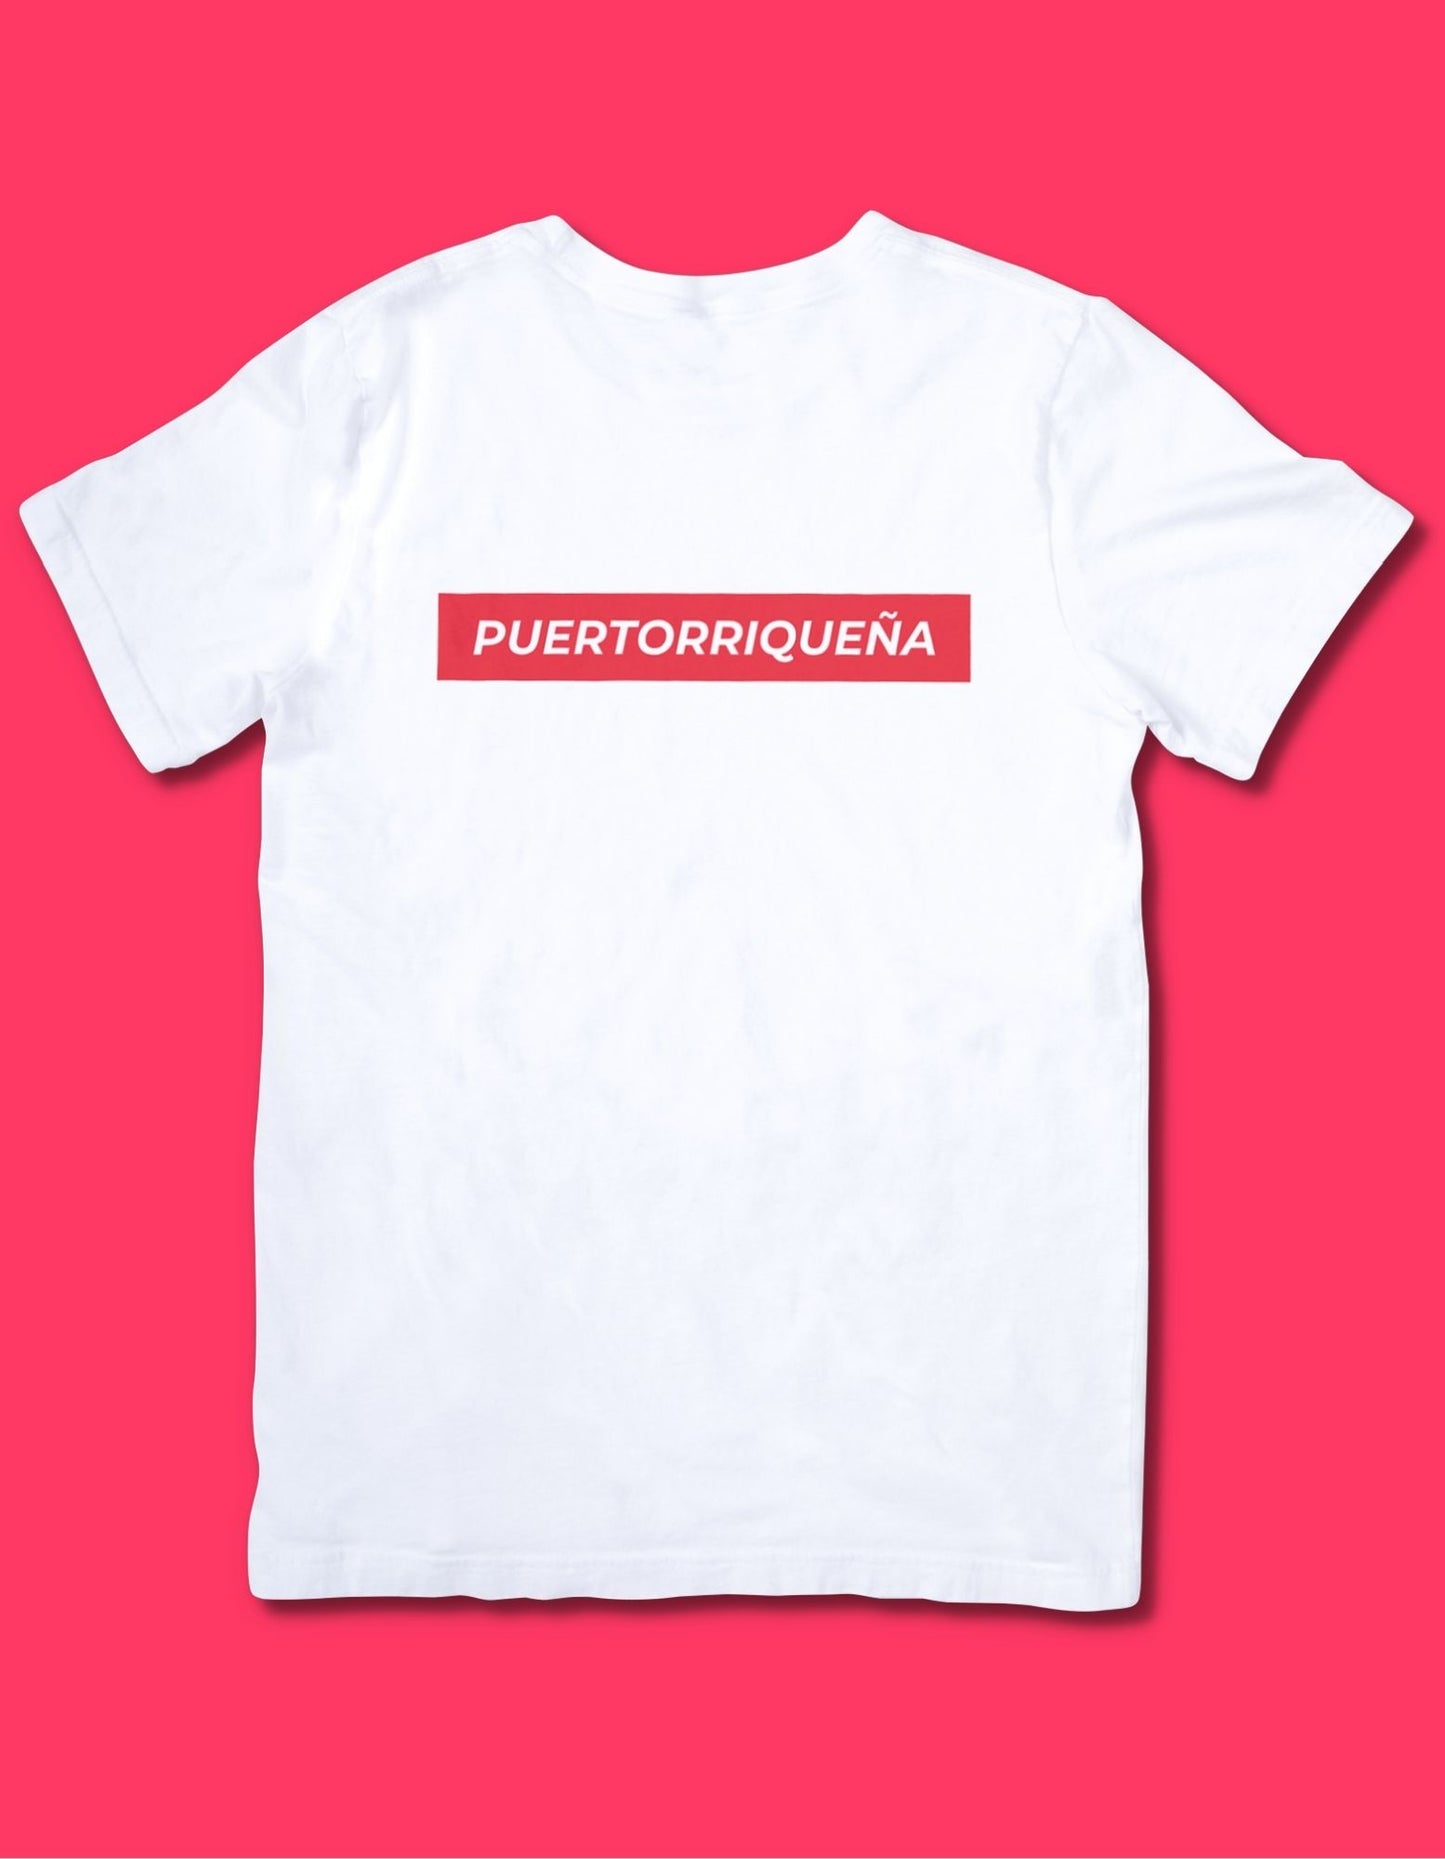 Puertorriqueña Tshirt